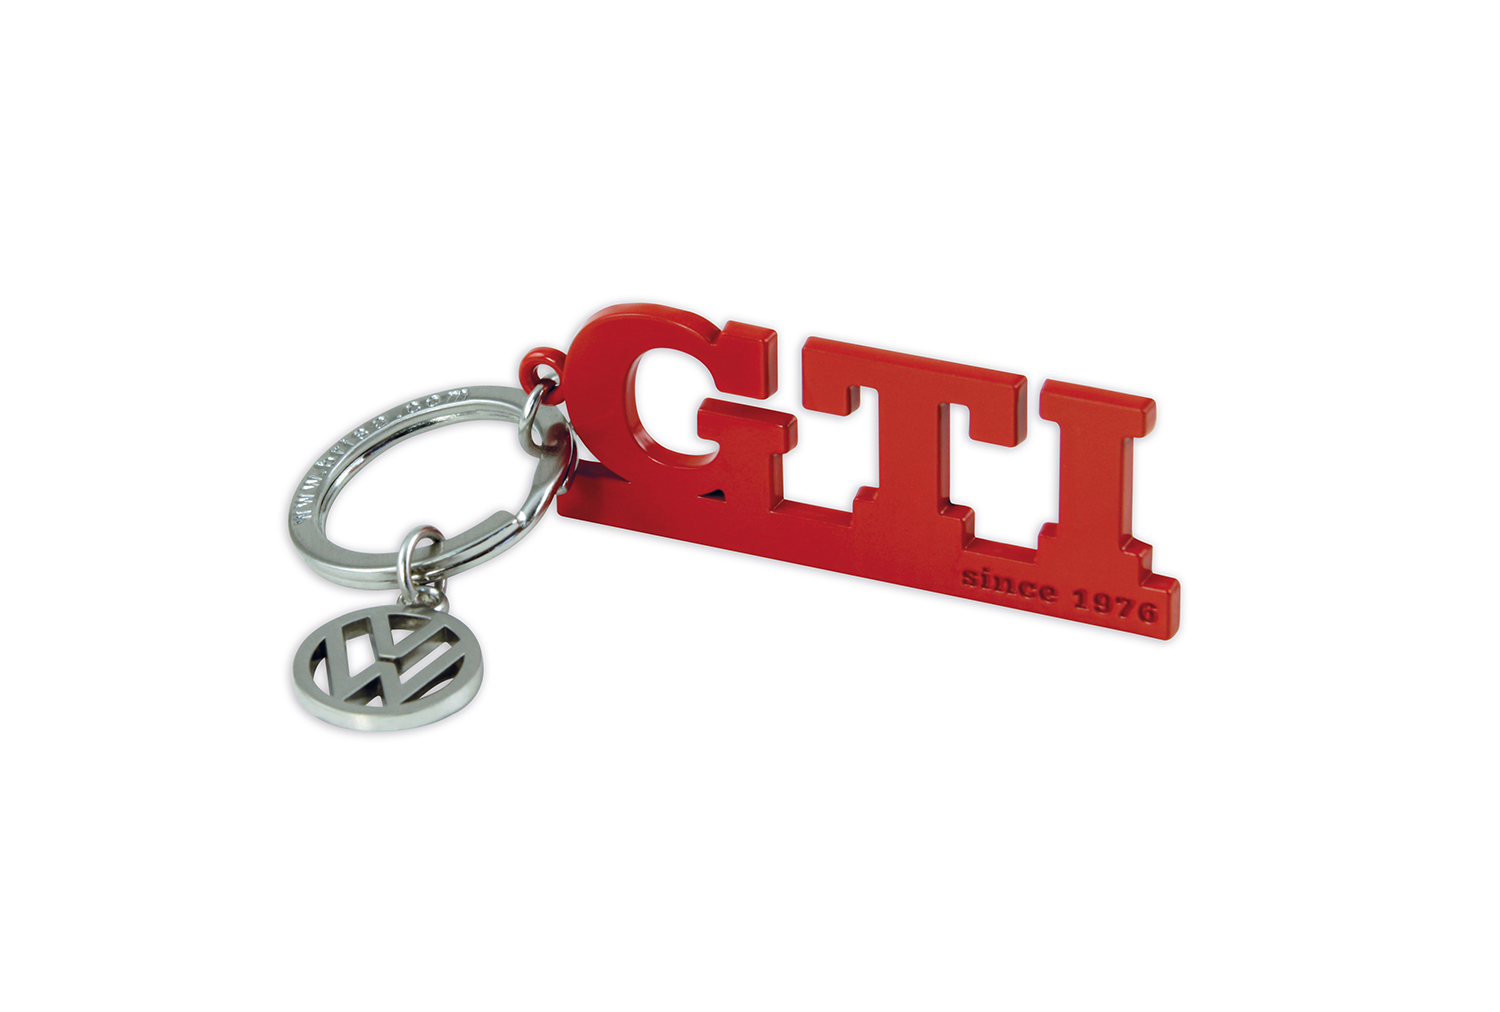 VW GTI Schlüsselanhänger mit Charm